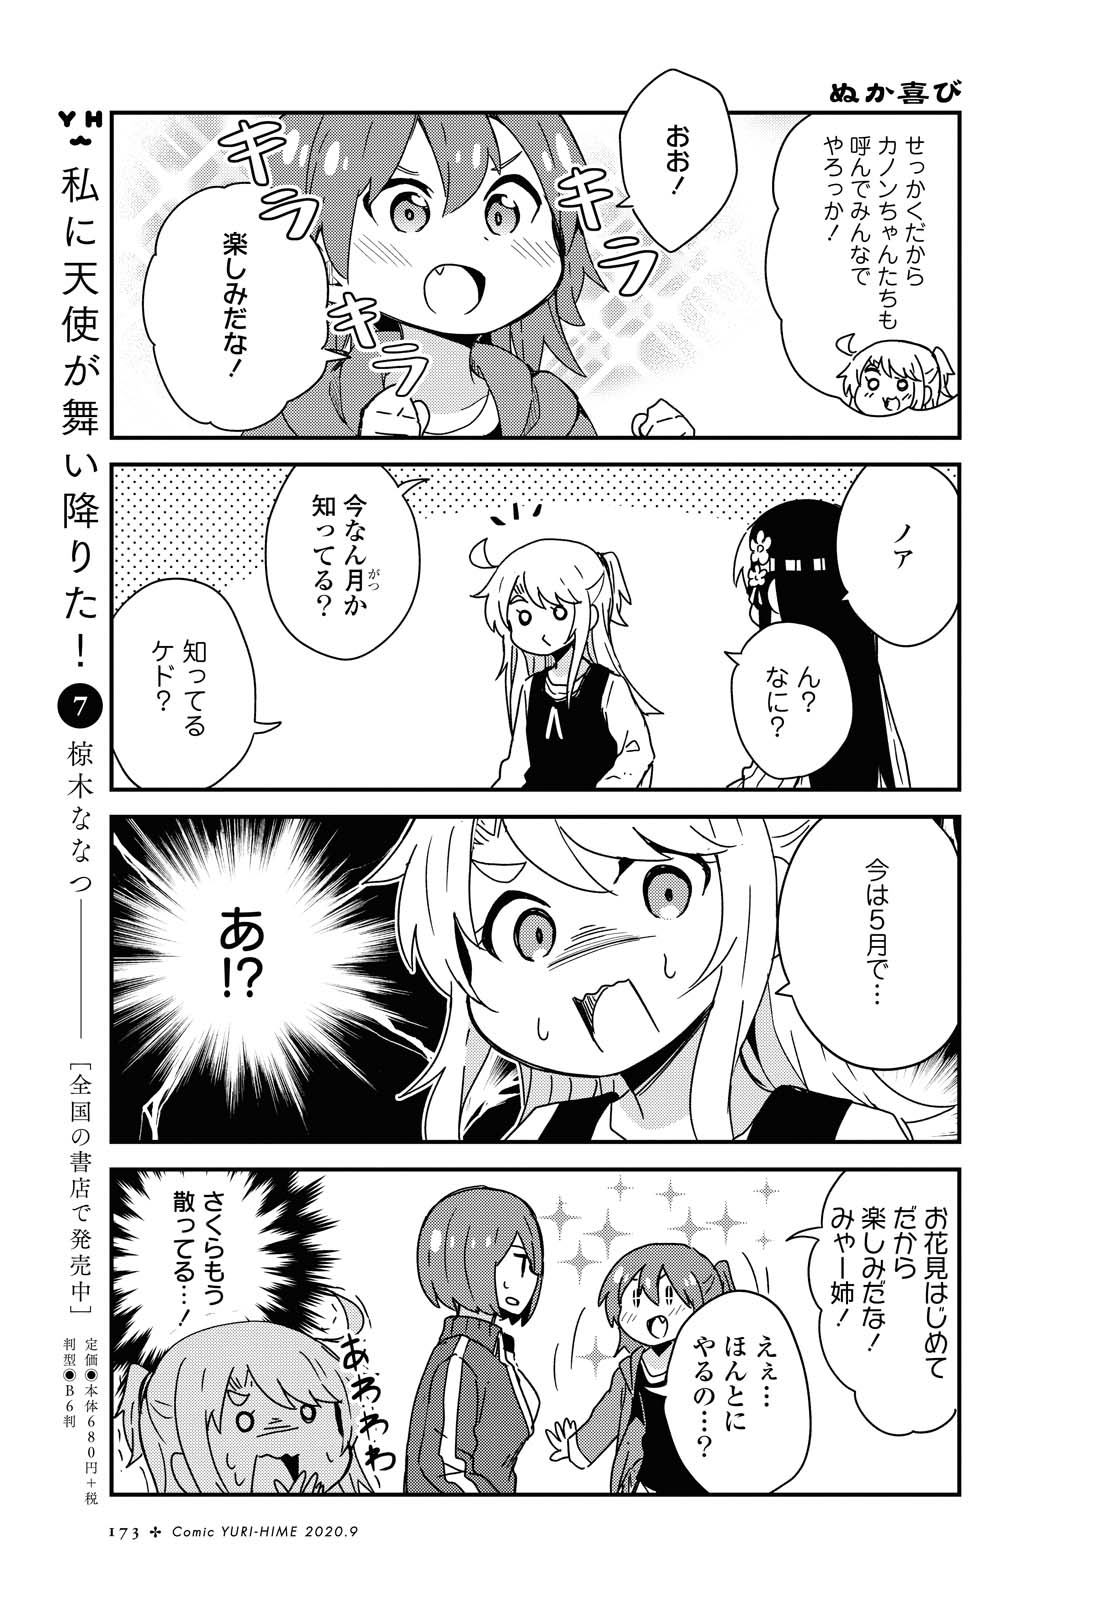 Watashi ni Tenshi ga Maiorita! - Chapter 68 - Page 3